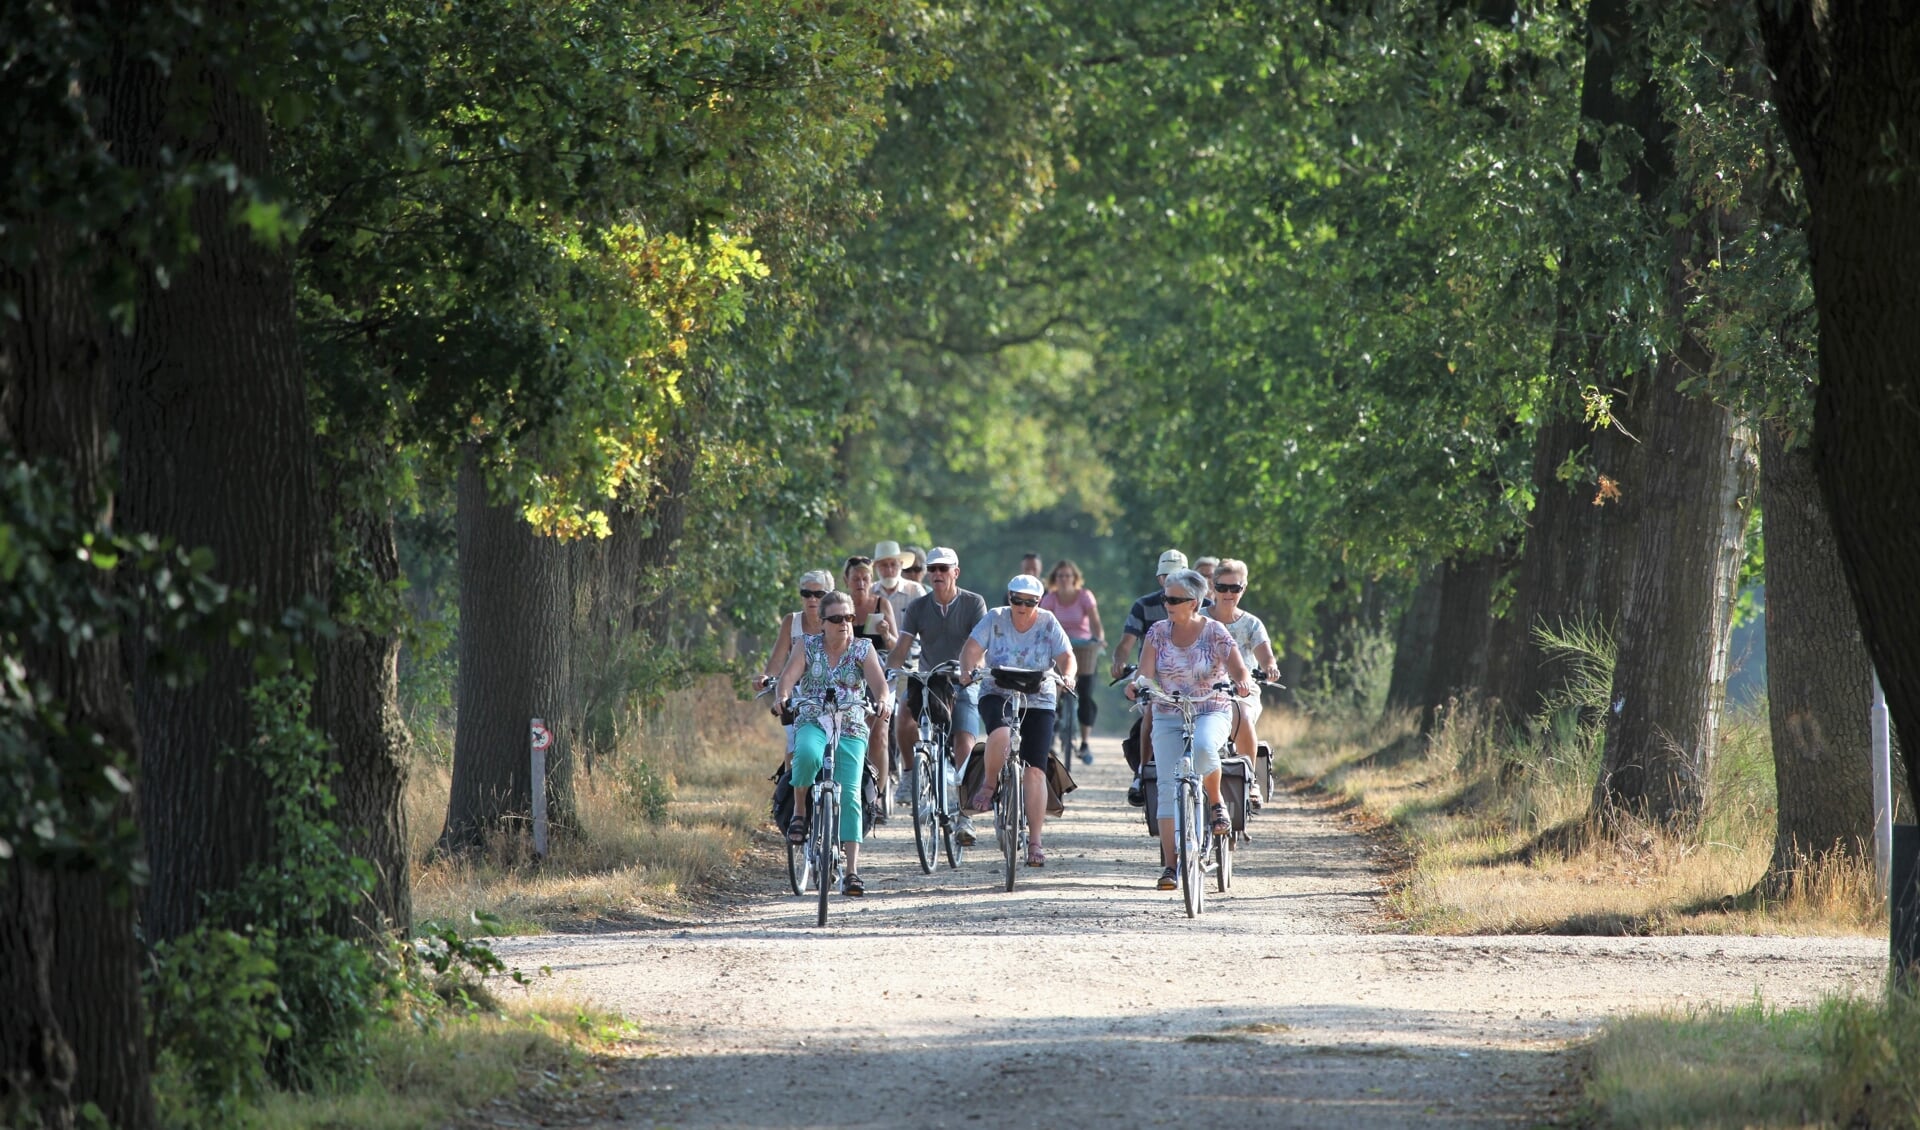 Niet alle paden en wegen zijn zo beschaduwd, dus de organisatie heeft de starttijden van de fietsvierdaagse aangepast. Foto: PR